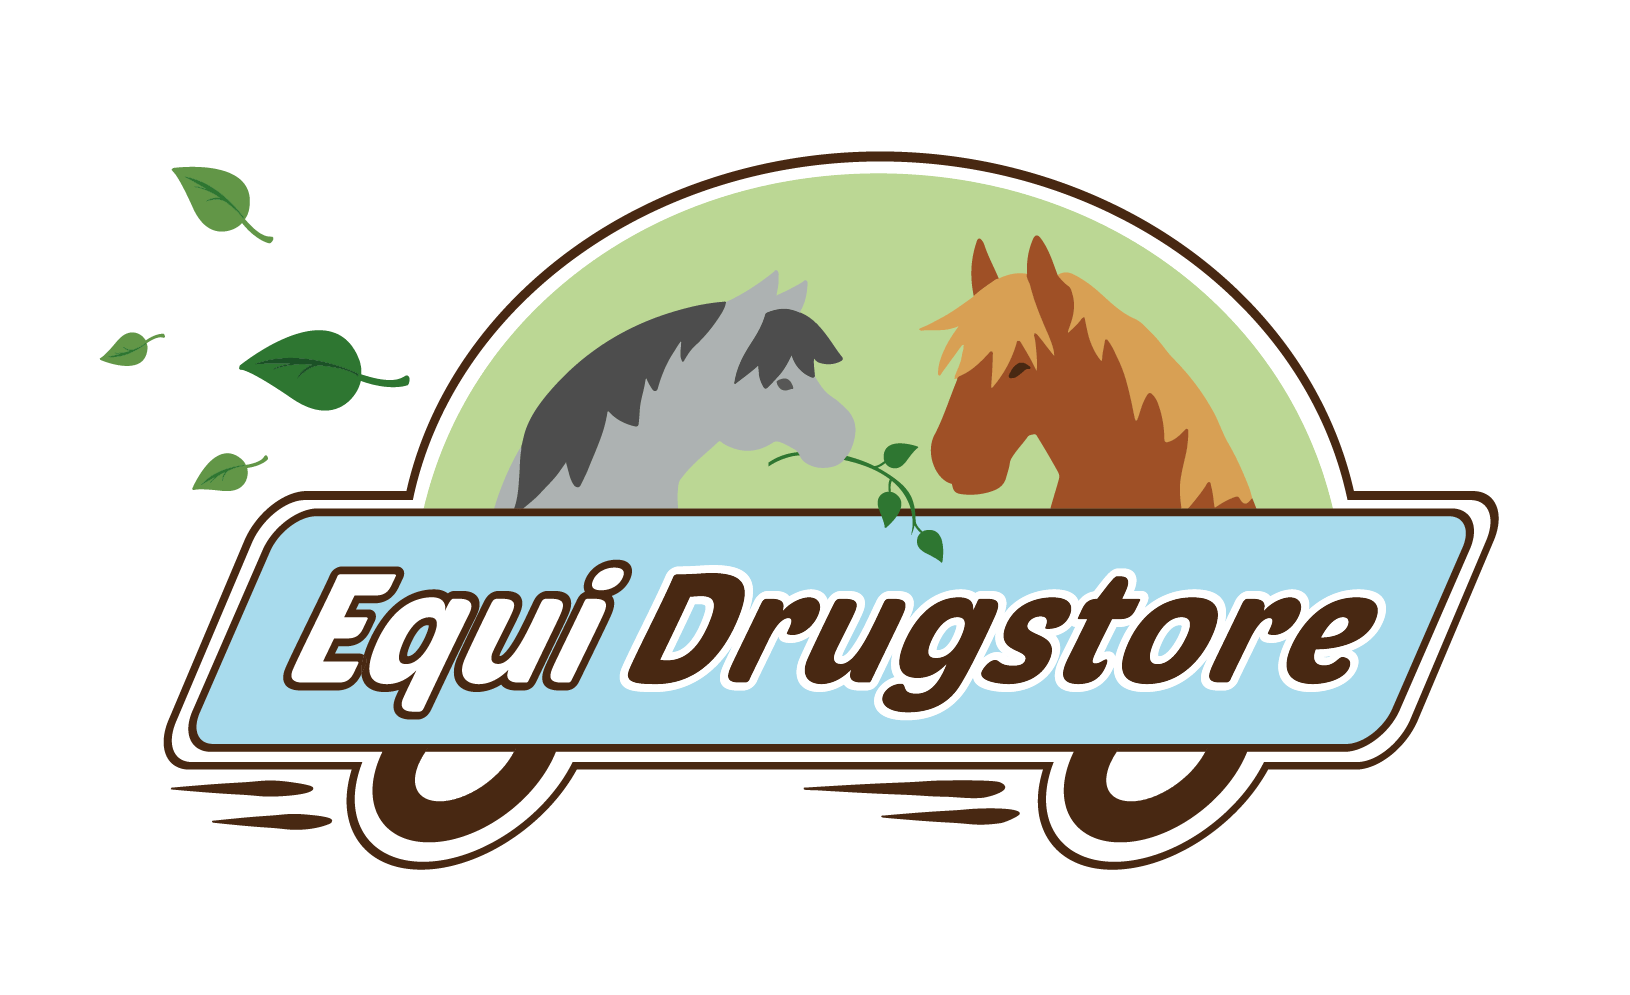 Equi-Drugstore